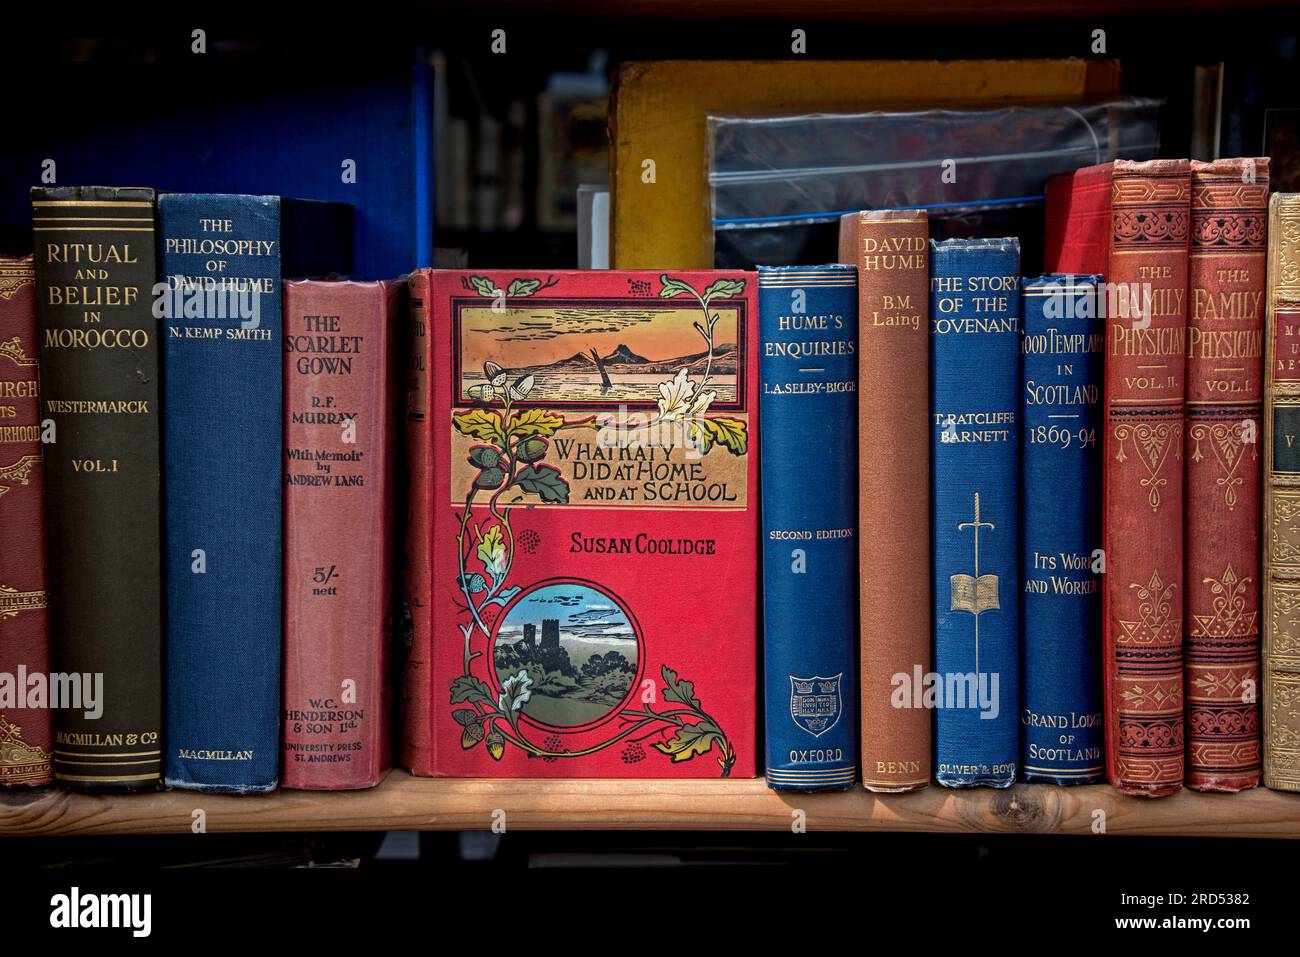 Copia vintage di "What Katy Did at Home and at School" e altri libri vintage in mostra nella finestra di una libreria di seconda mano a Edimburgo. Foto Stock